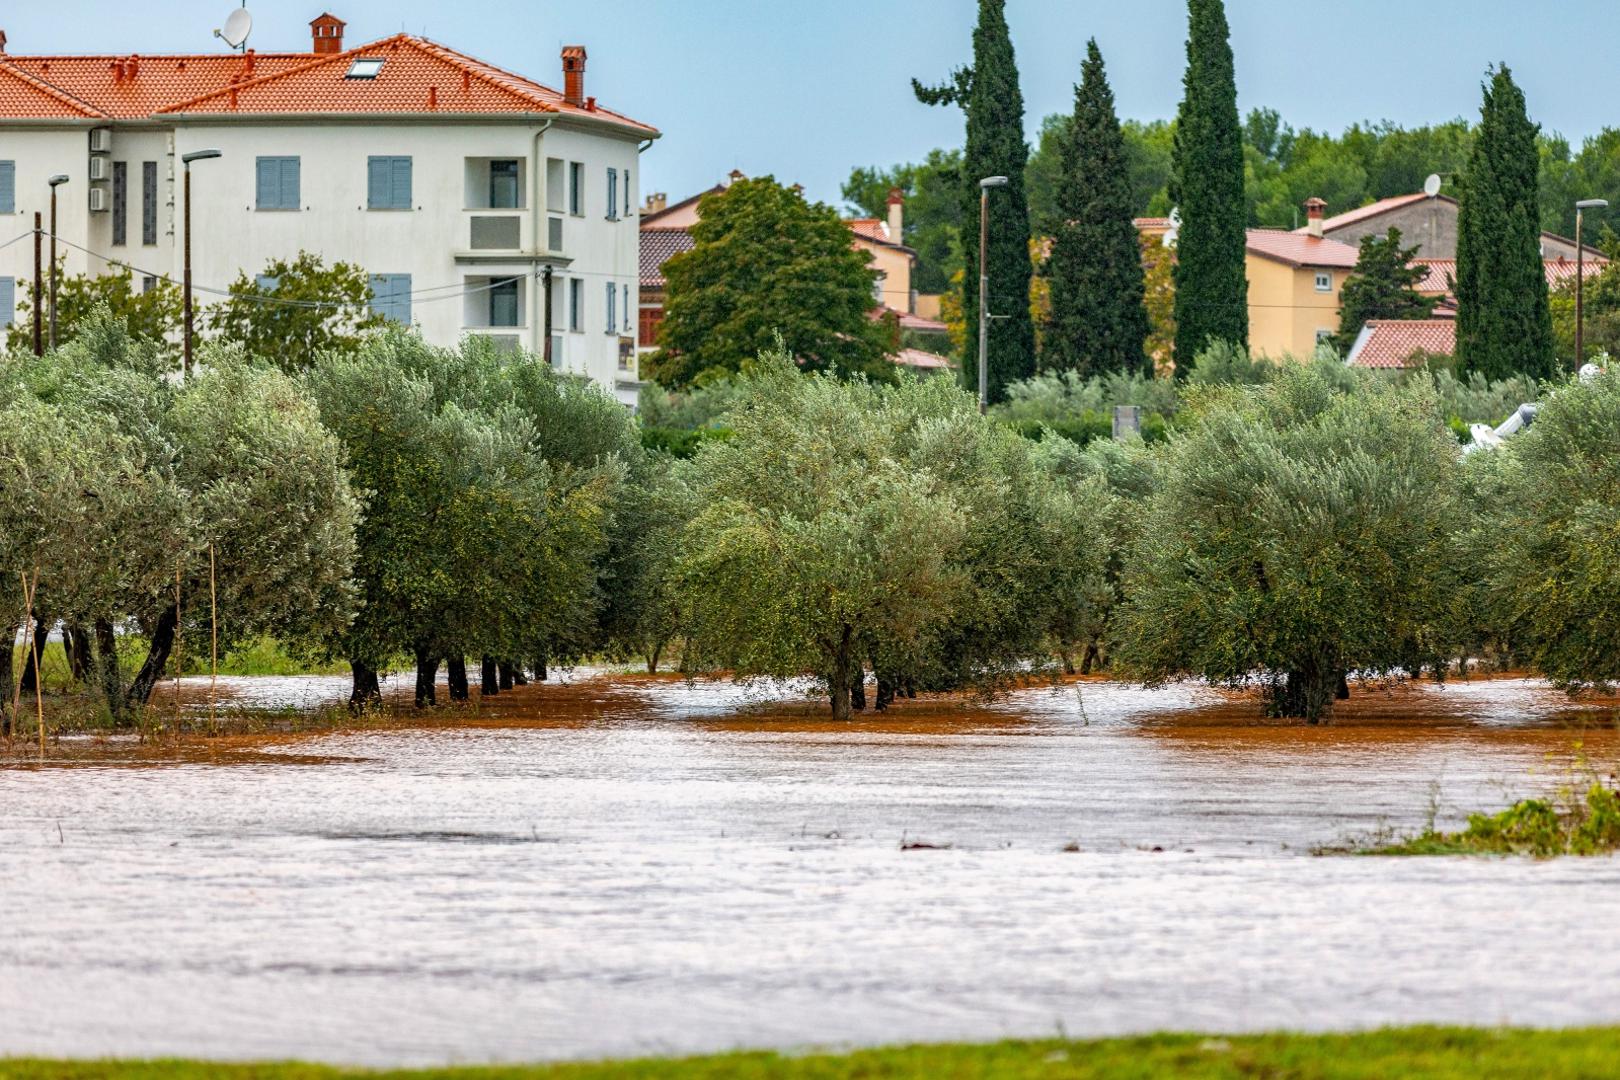 11.10.2020., Kokuletovica - Velike kolicine kise stvorile su mjestimicne probleme u prometu i poplavile su neke maslinike te vinograde.
Photo: Srecko Niketic/PIXSELL